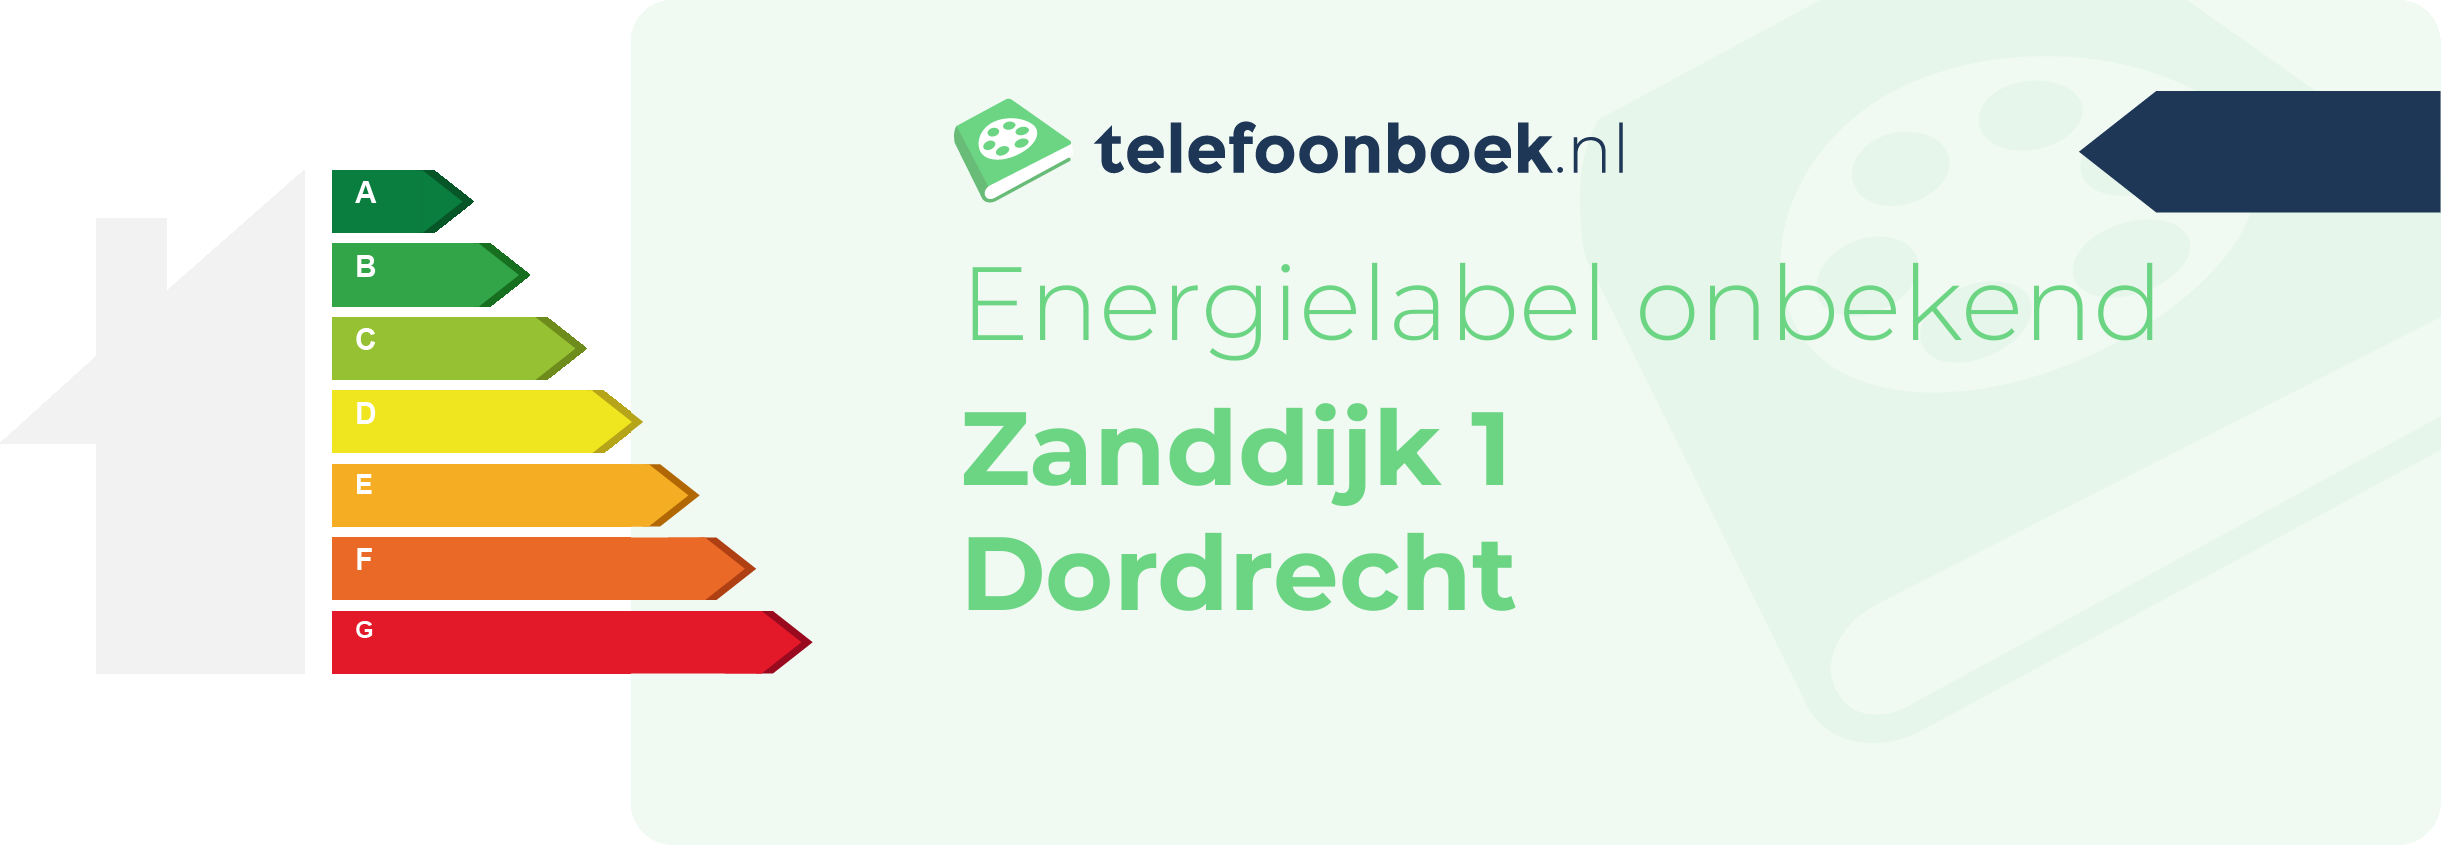 Energielabel Zanddijk 1 Dordrecht